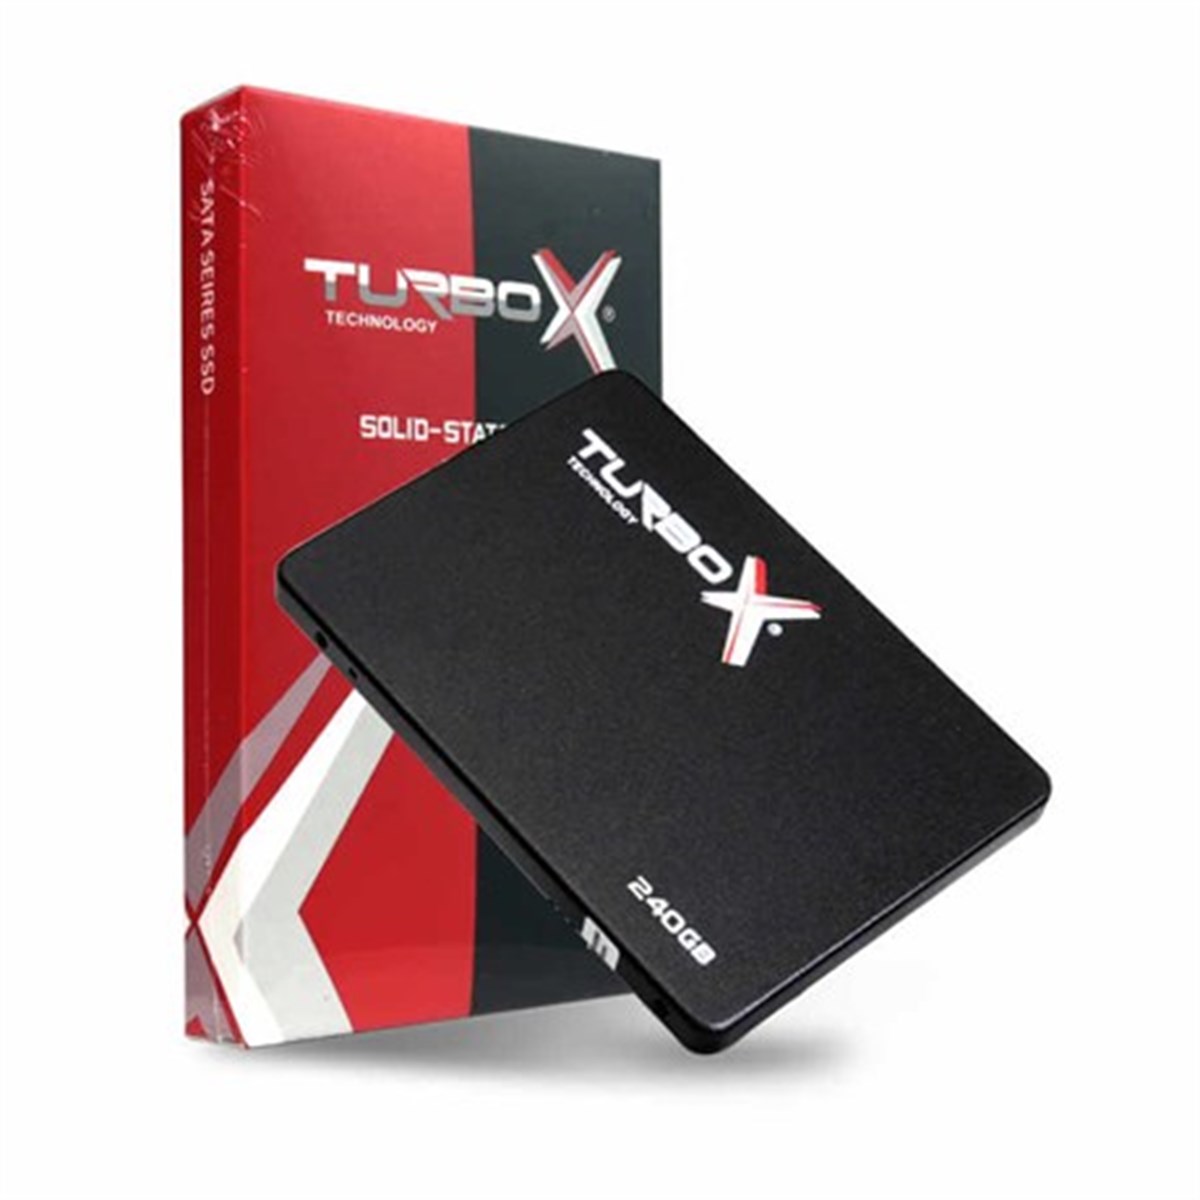 Turbox 256GB SSD HDD 520/400MBs 2,5 KTA320